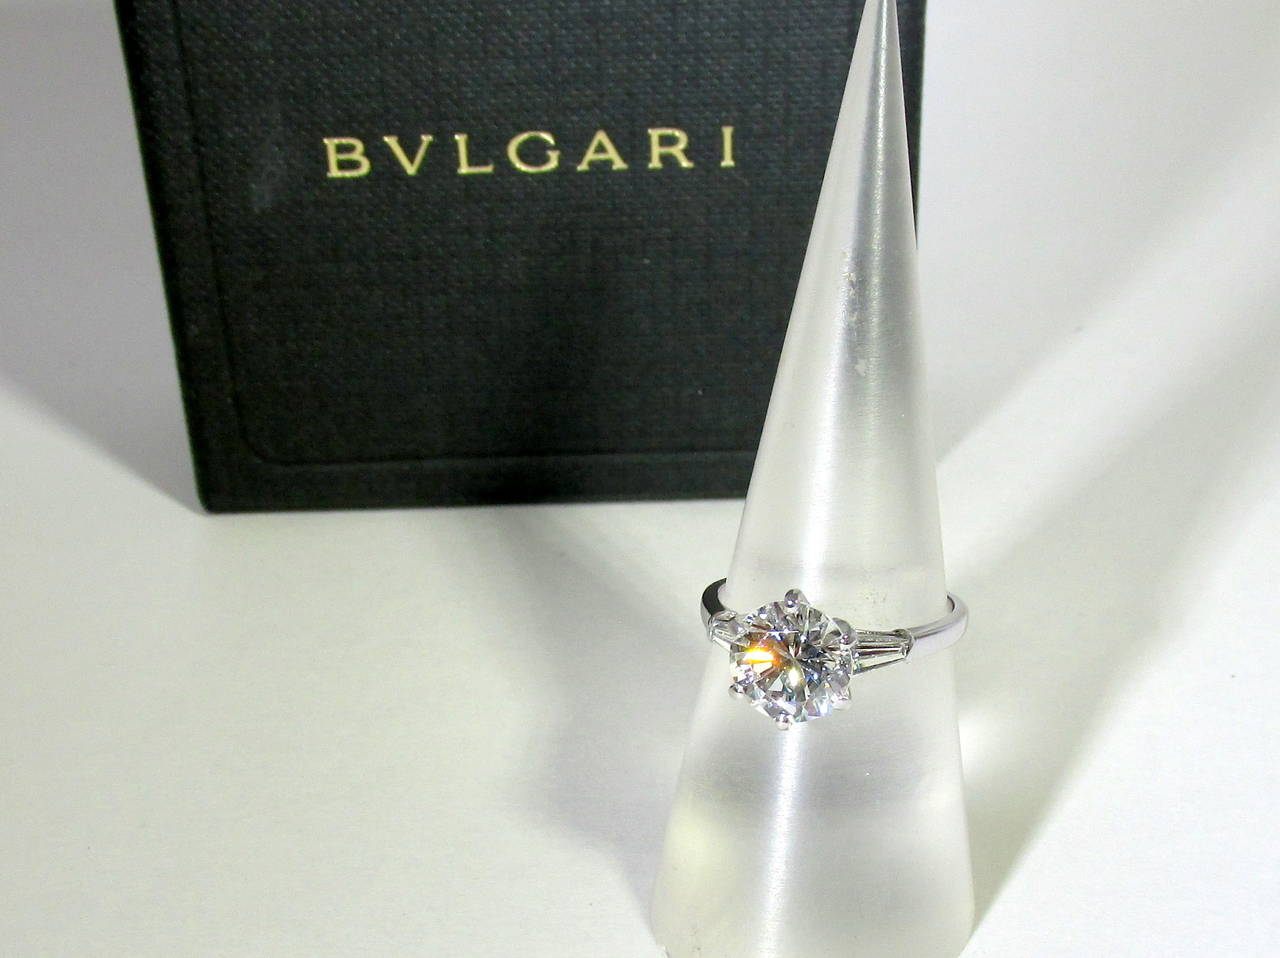 Contemporary Bulgari diamond ring